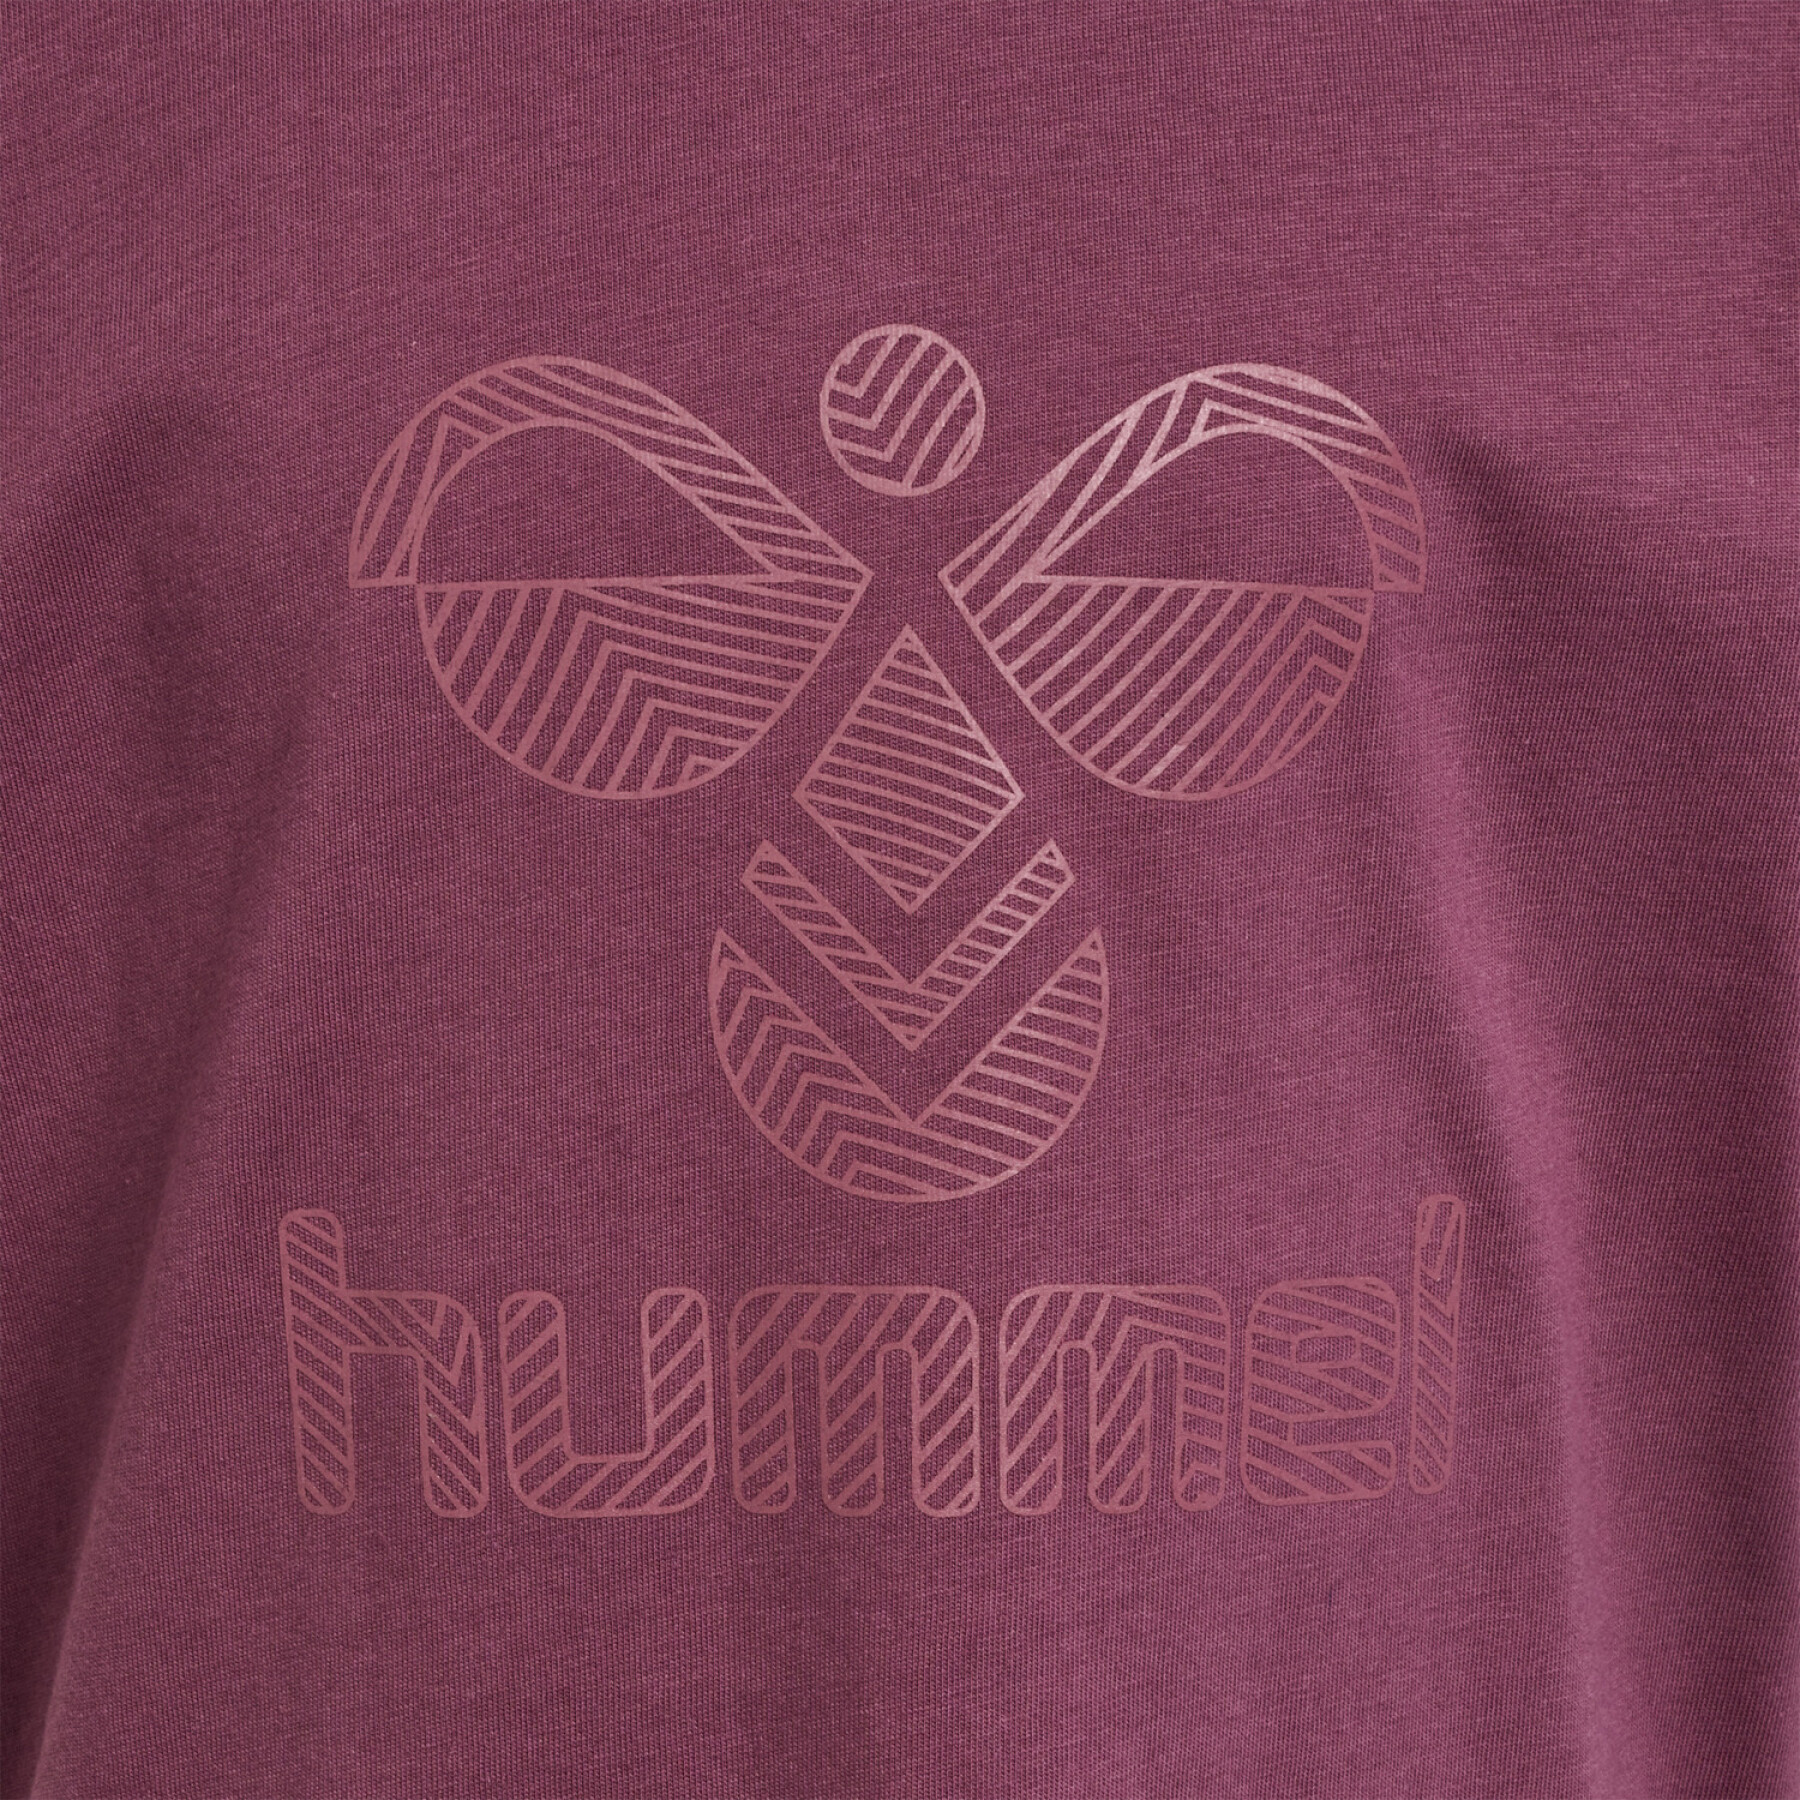 Camiseta infantil Hummel Fastwo